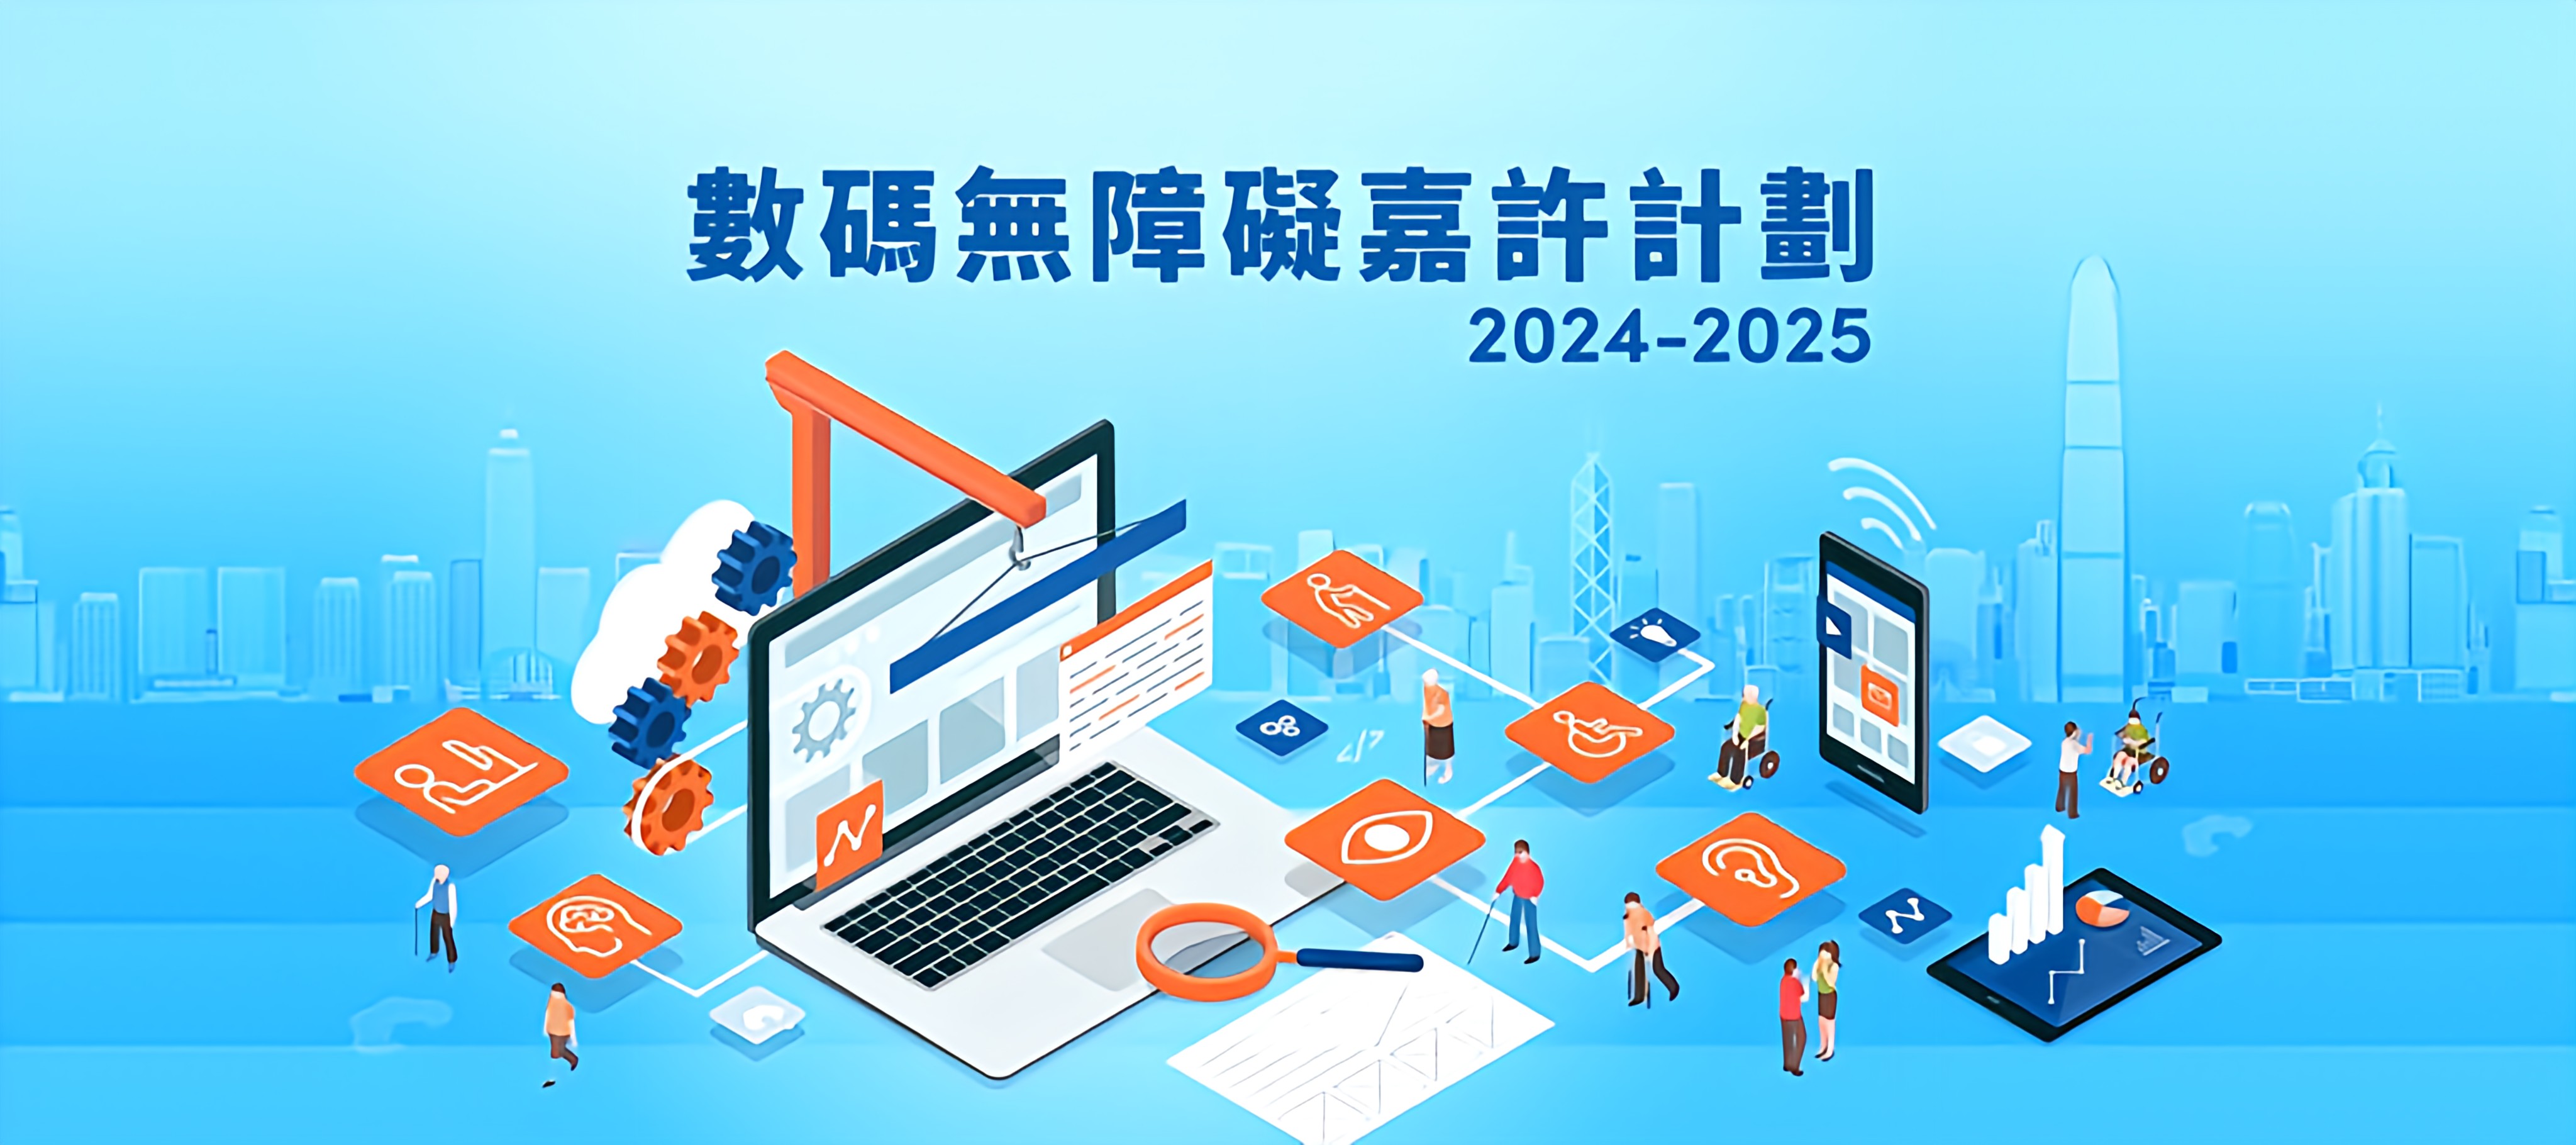 2024至2025年度「數碼無障礙嘉許計劃」開始接受報名